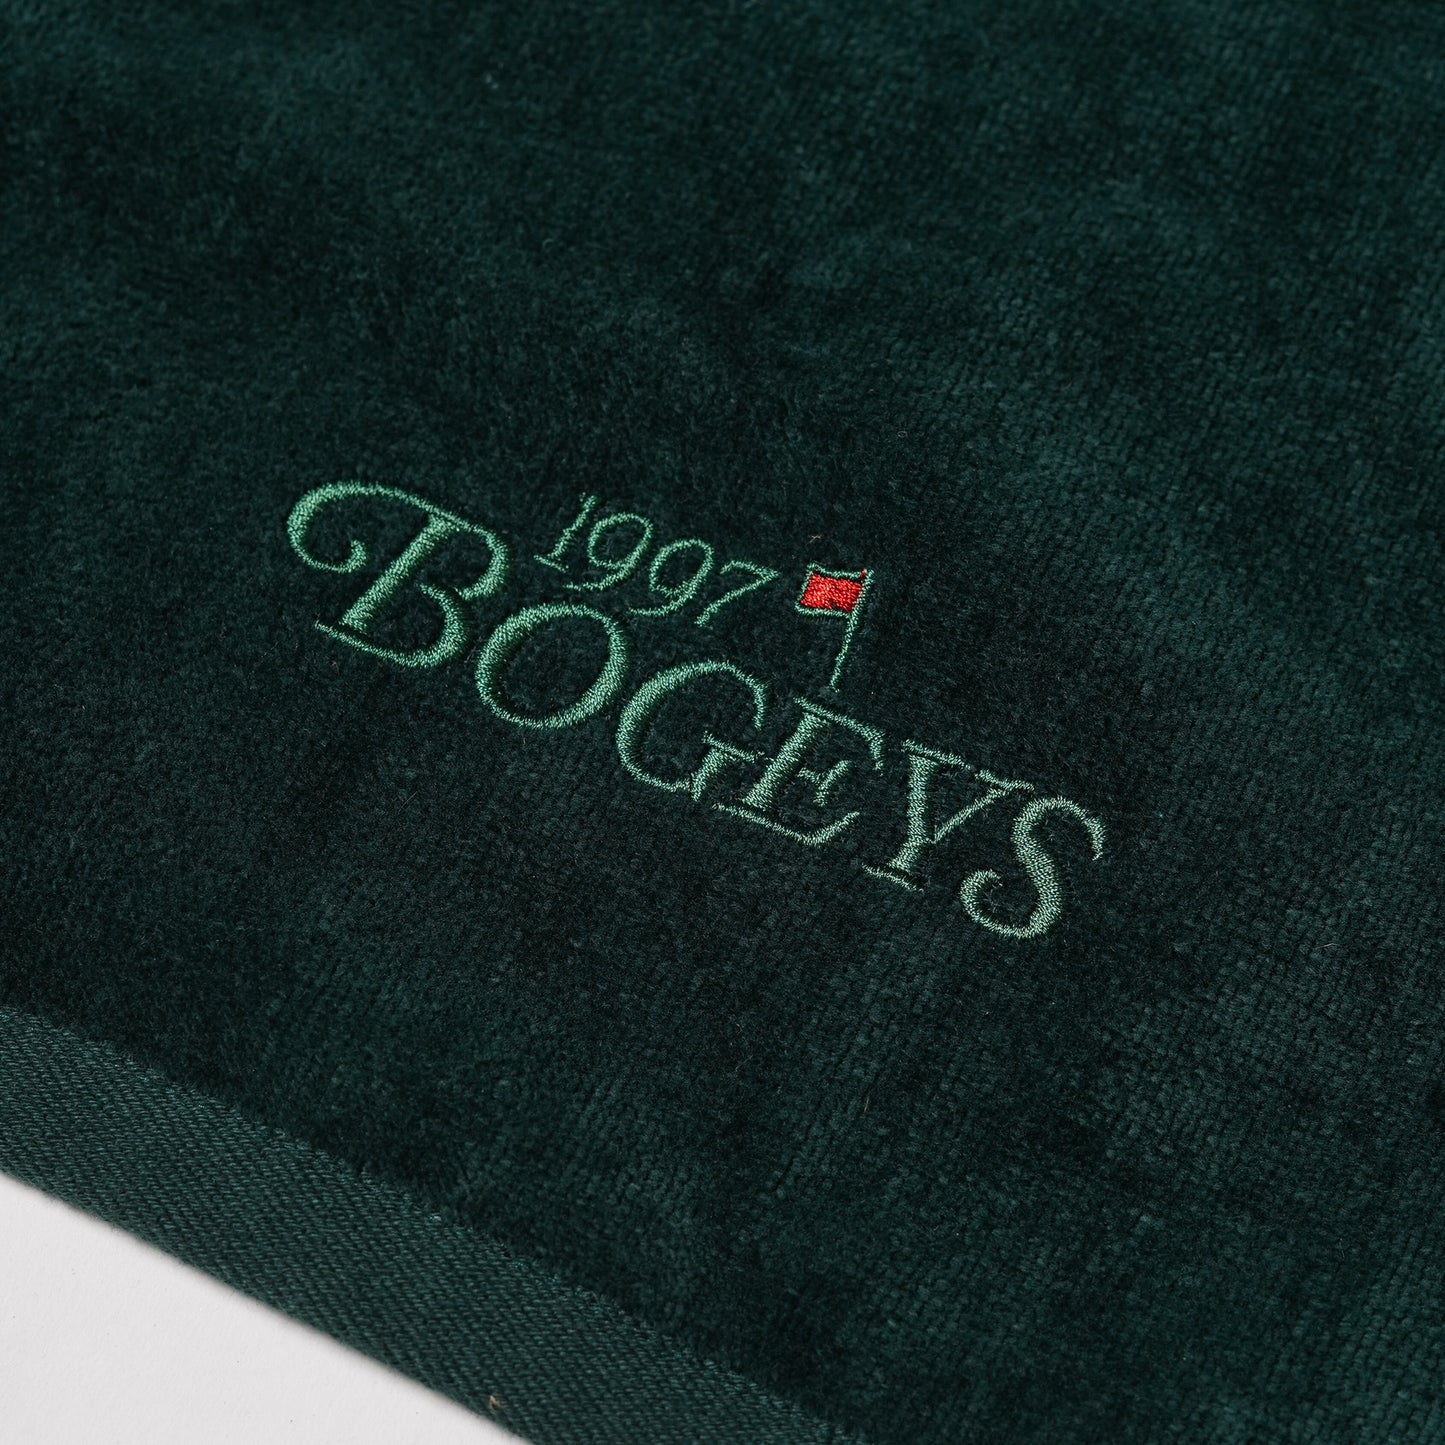 1997 Towel